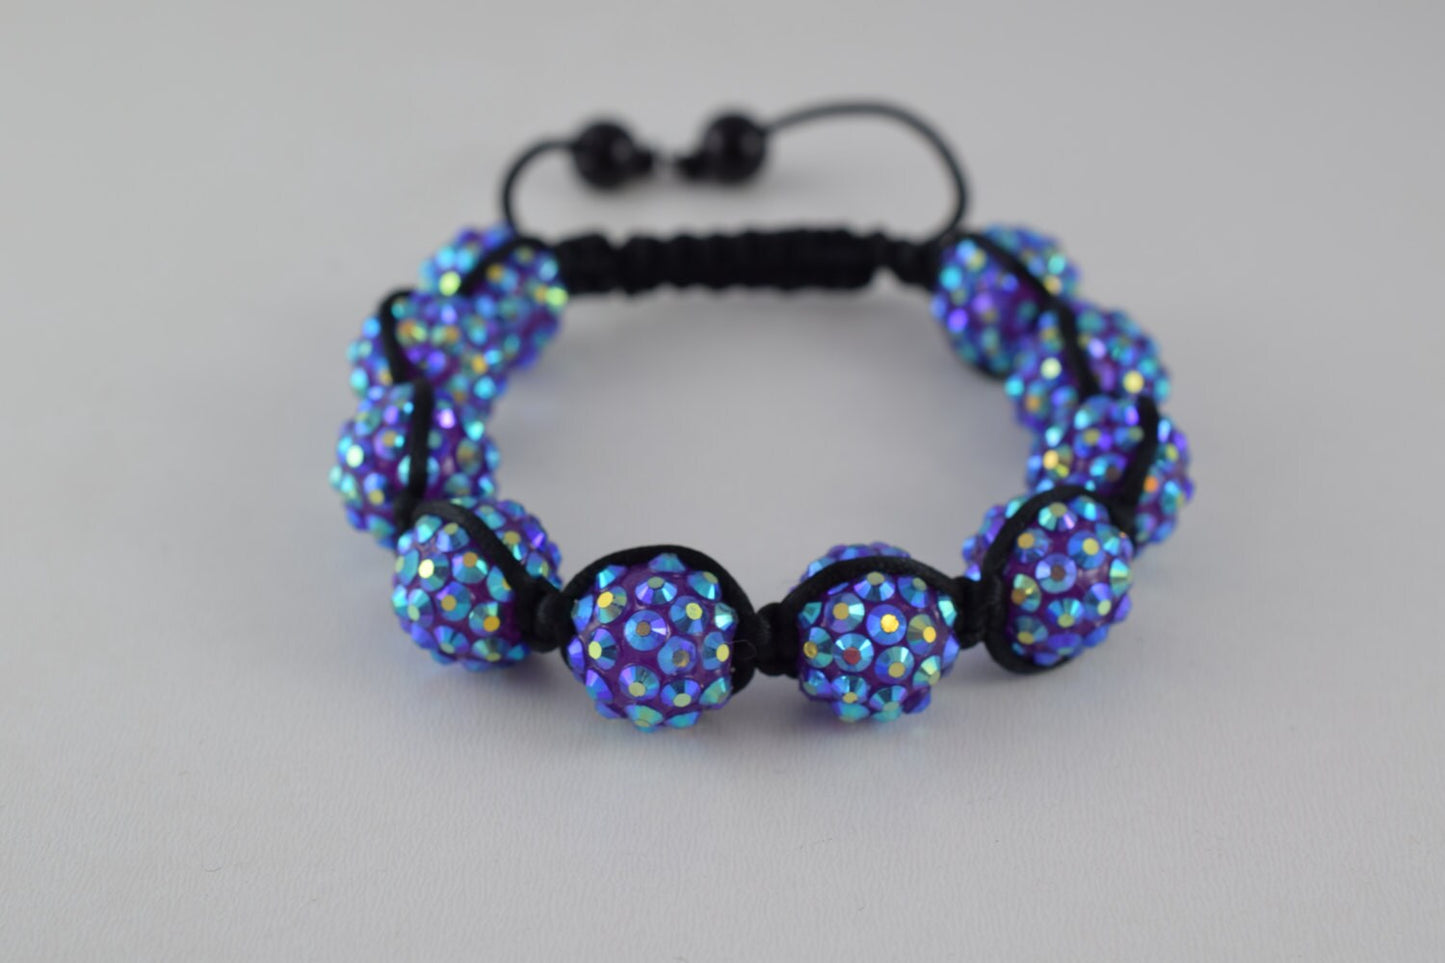 Resin Rhinestone Beads 12mm Macrame Hand Made Bracelet 3 dollars for dozen 6 colors 10 Resin beads in one bracelet